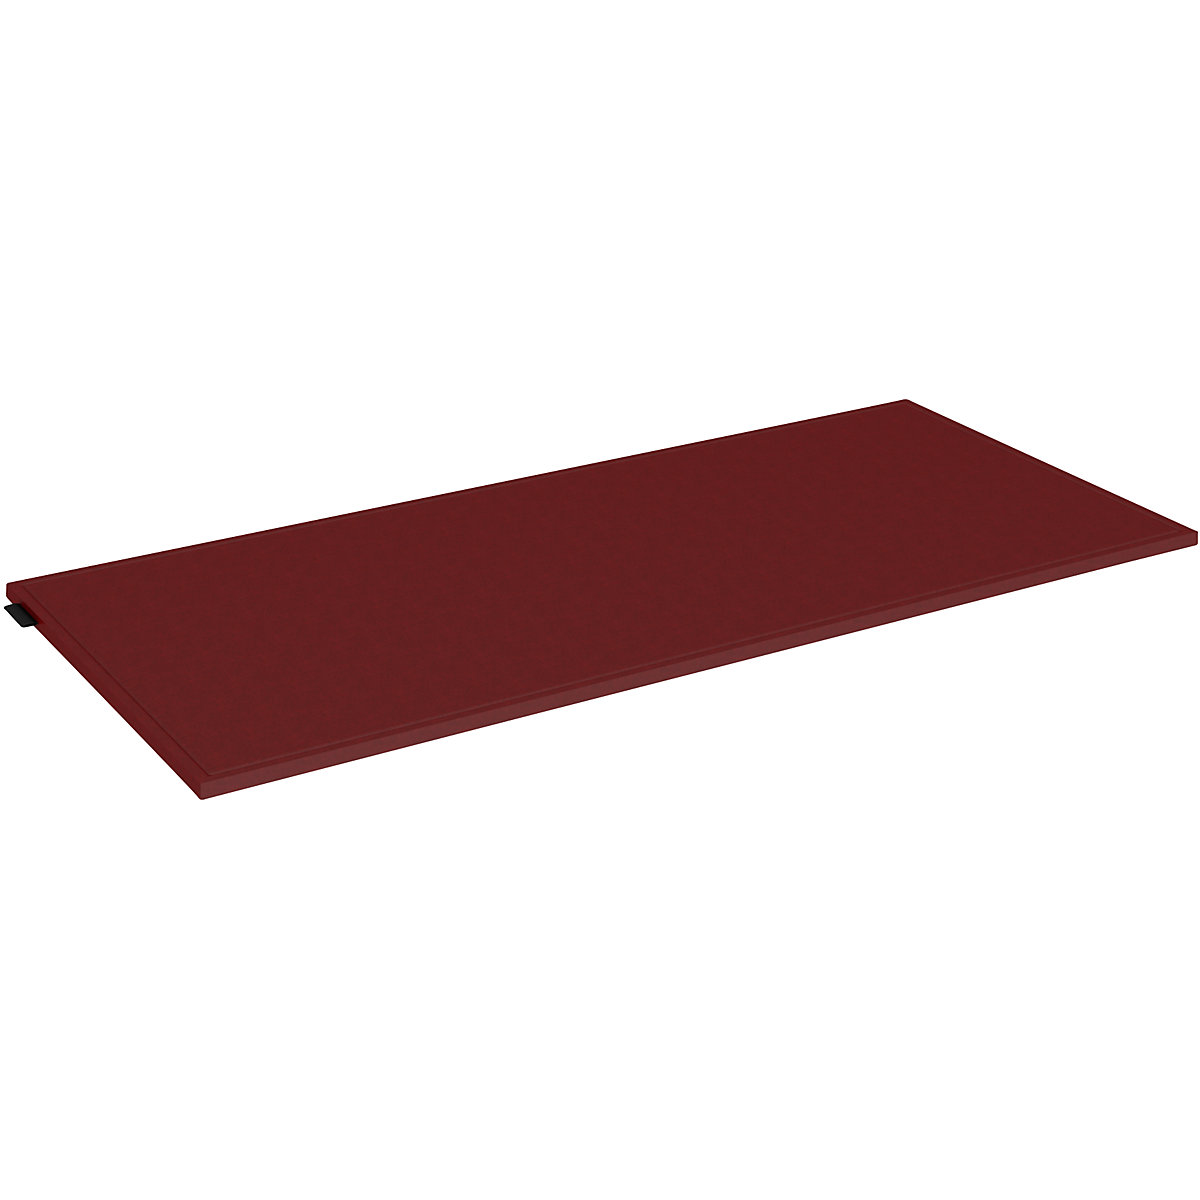 Filz-Sitzkissen für Einzelbox mauser, Breite 762 mm, rot-2